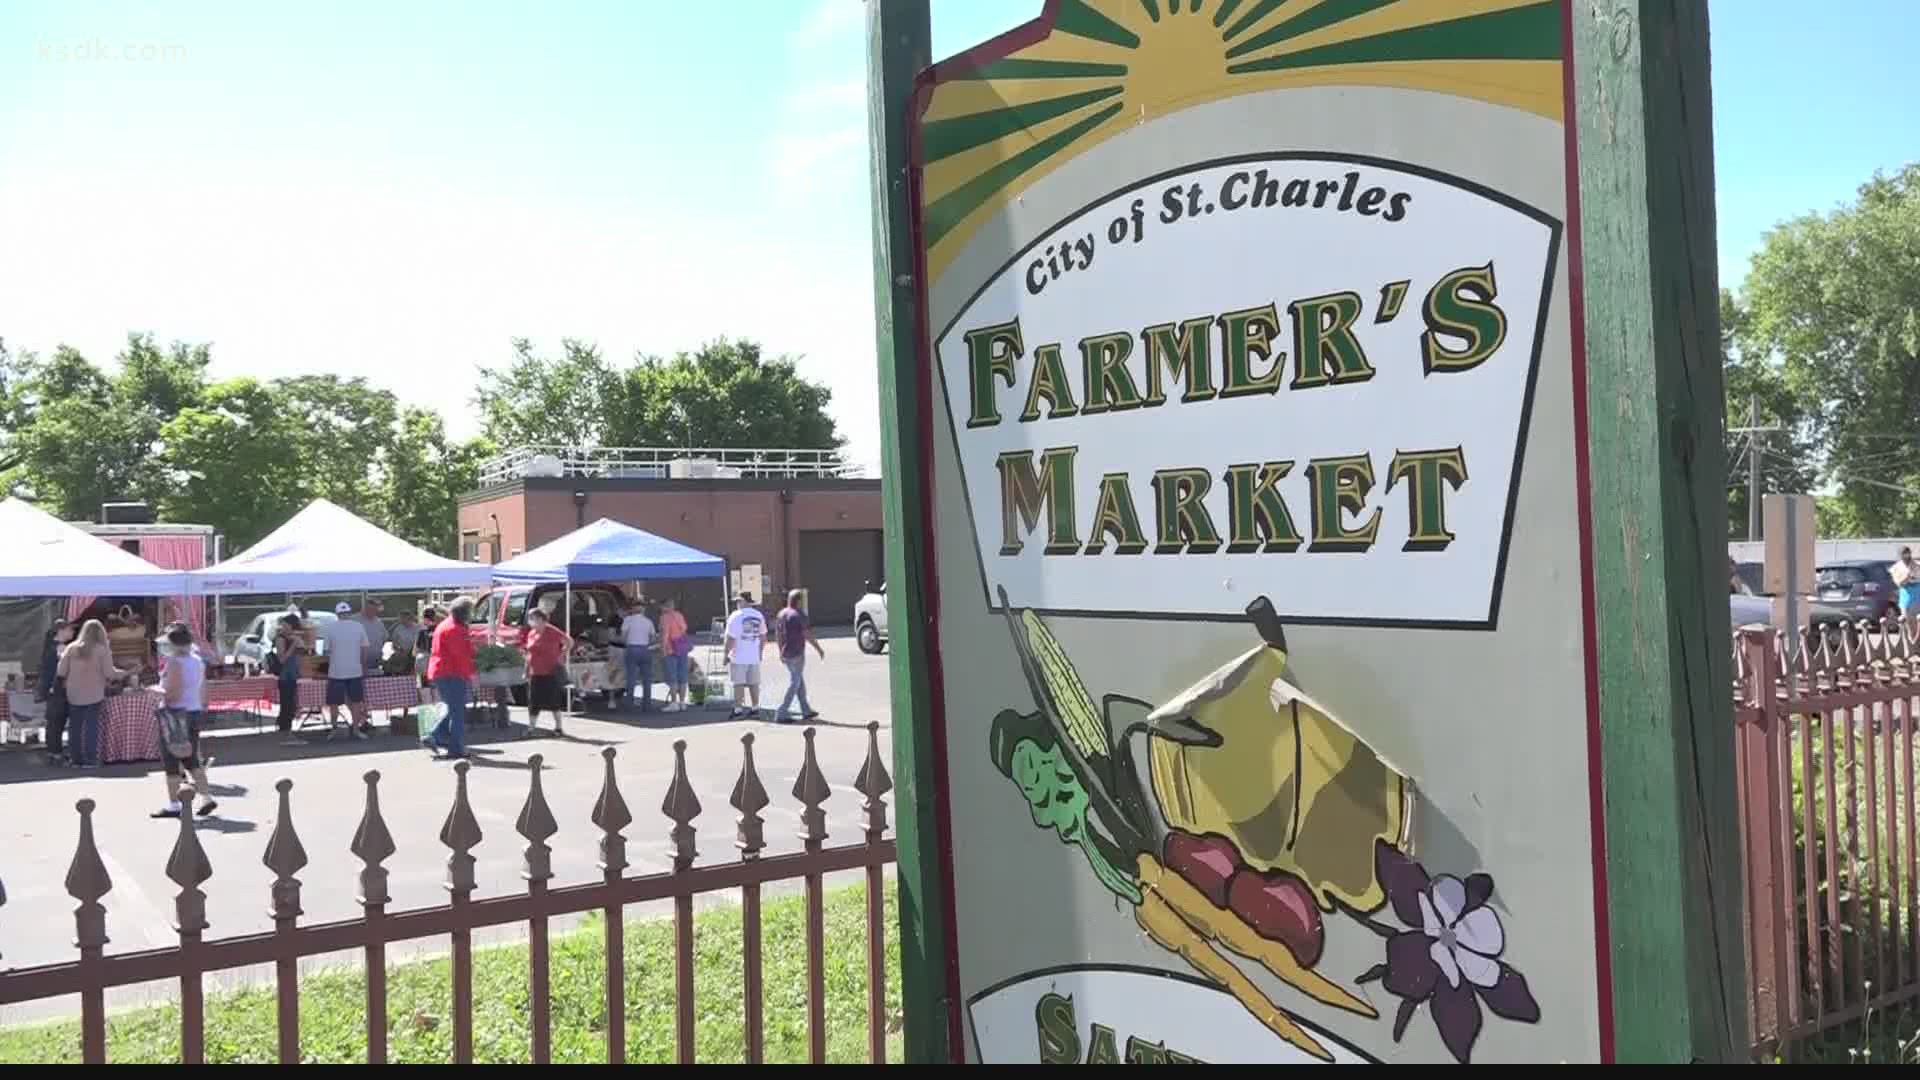 For more information on the St. Charles Farmers Market, visit facebook.com/FarmersMarketofStCharlesMO.